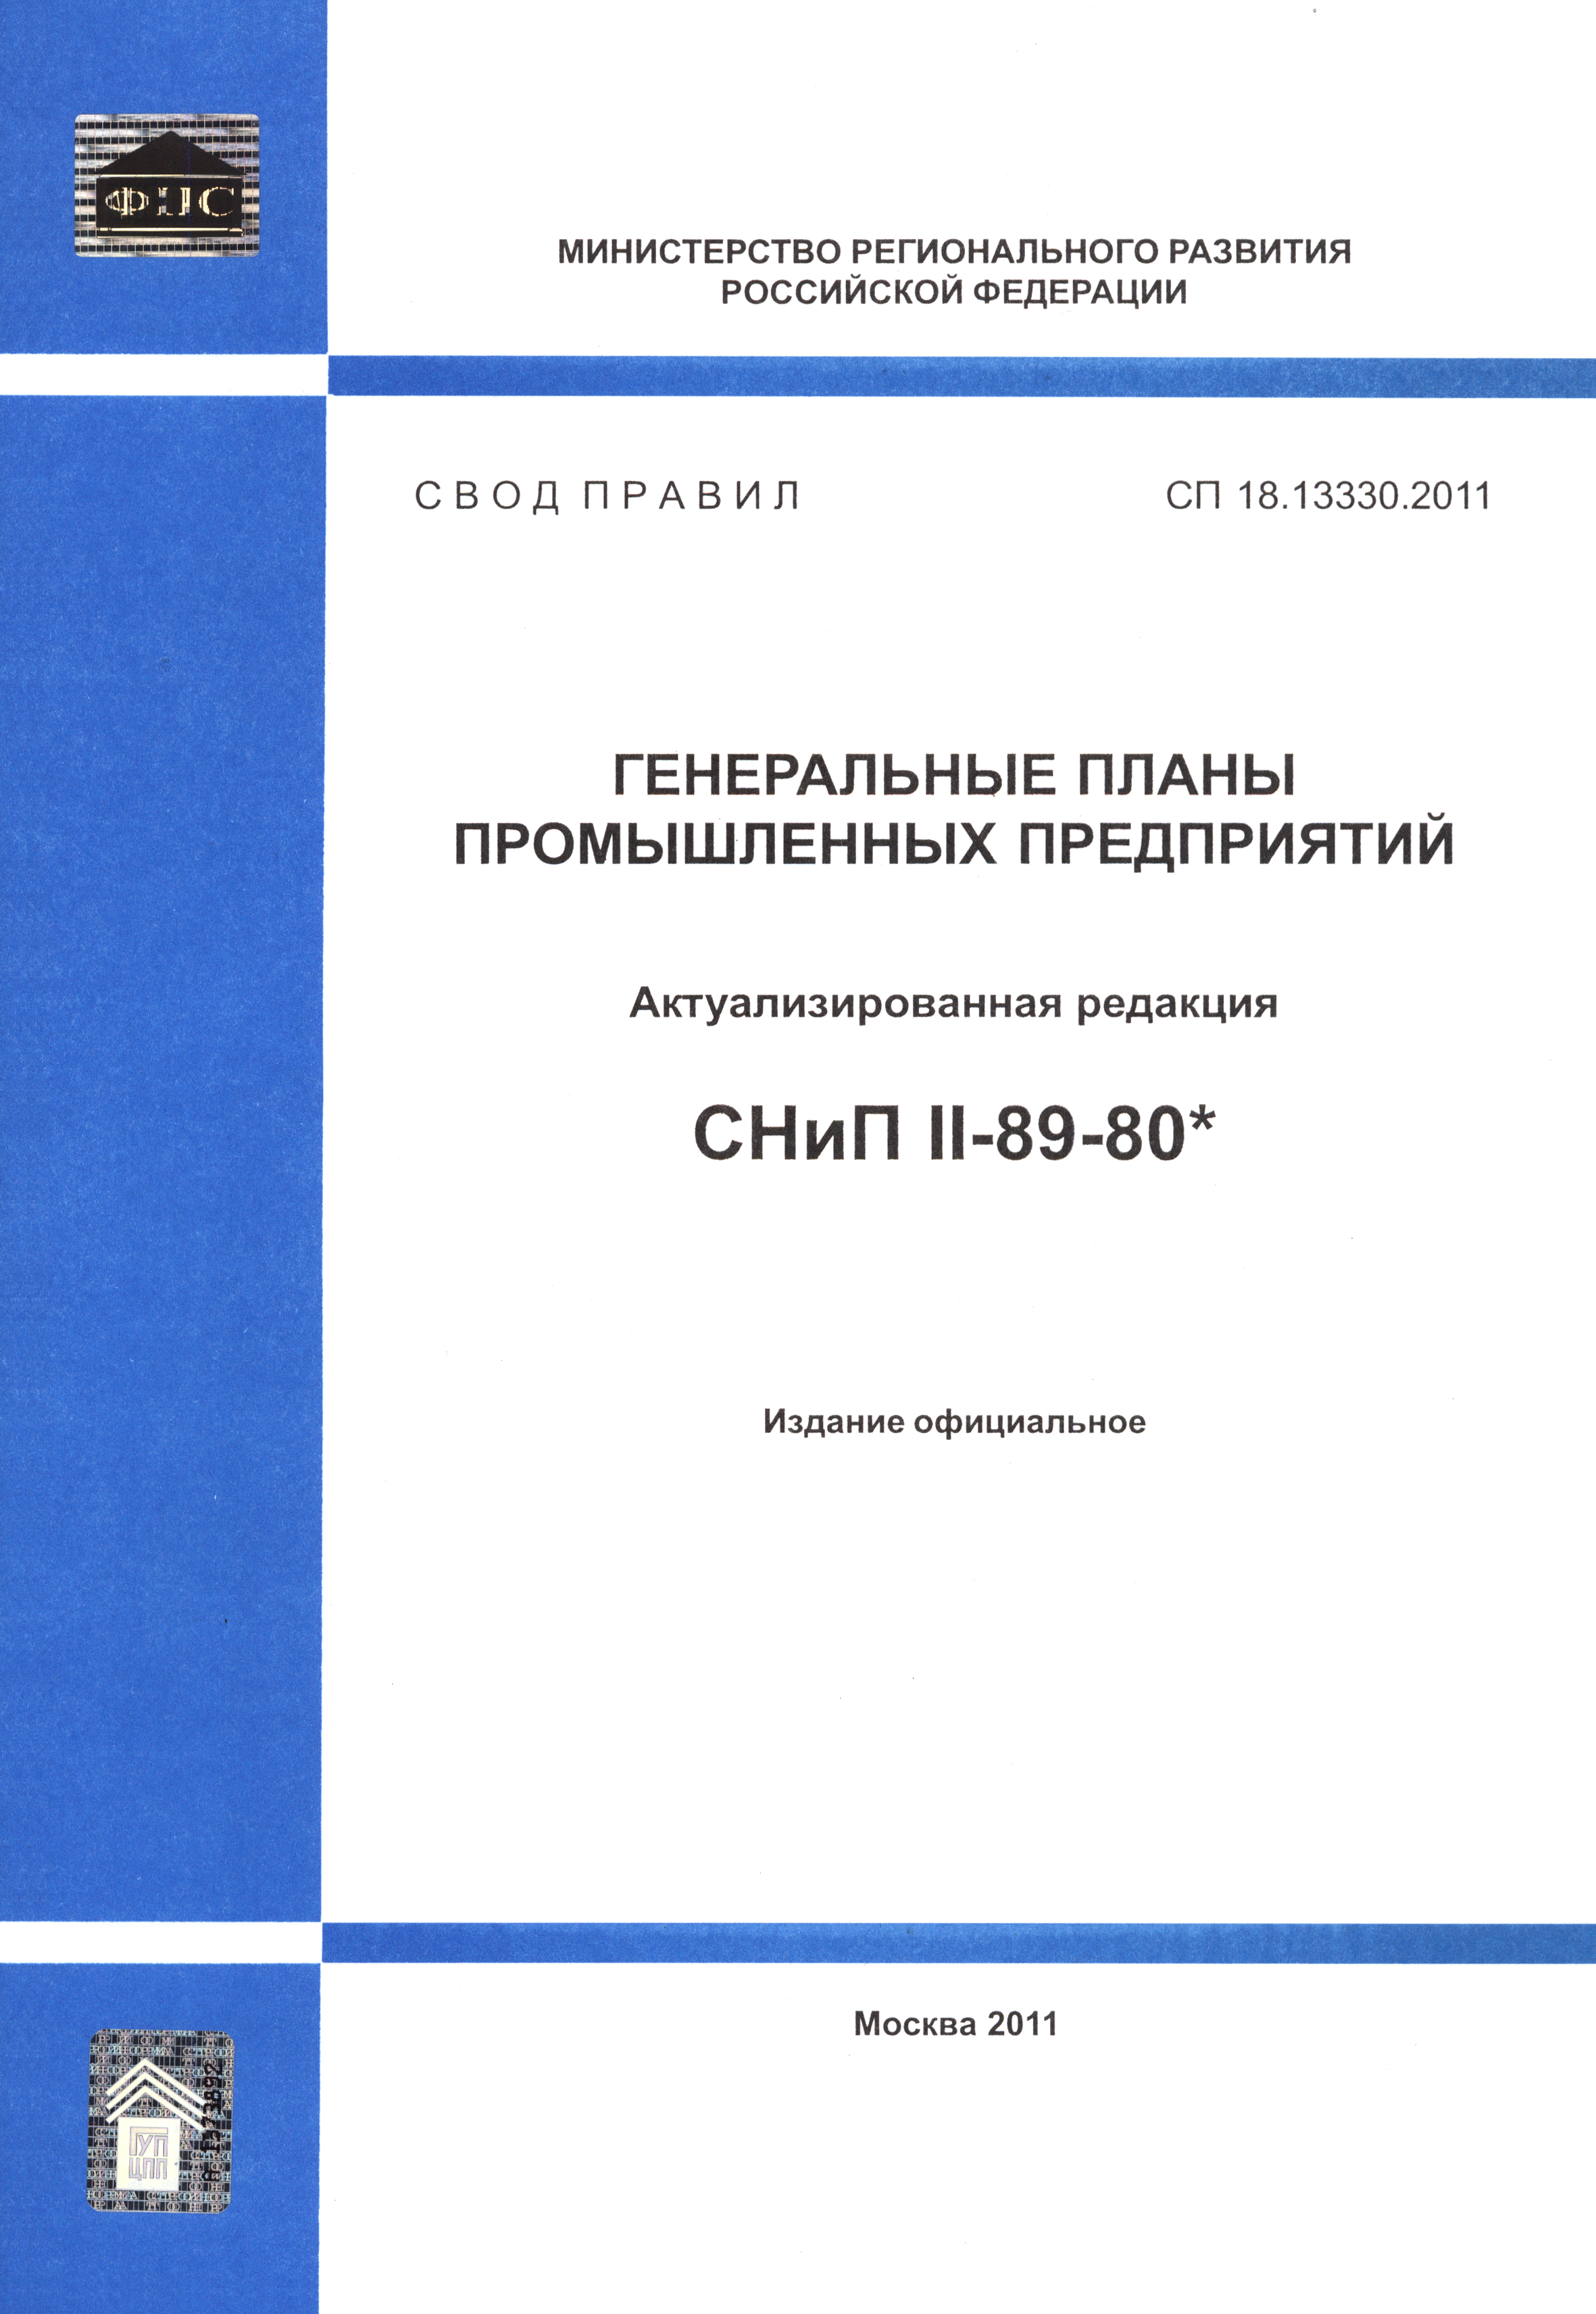 СП 18.13330.2011